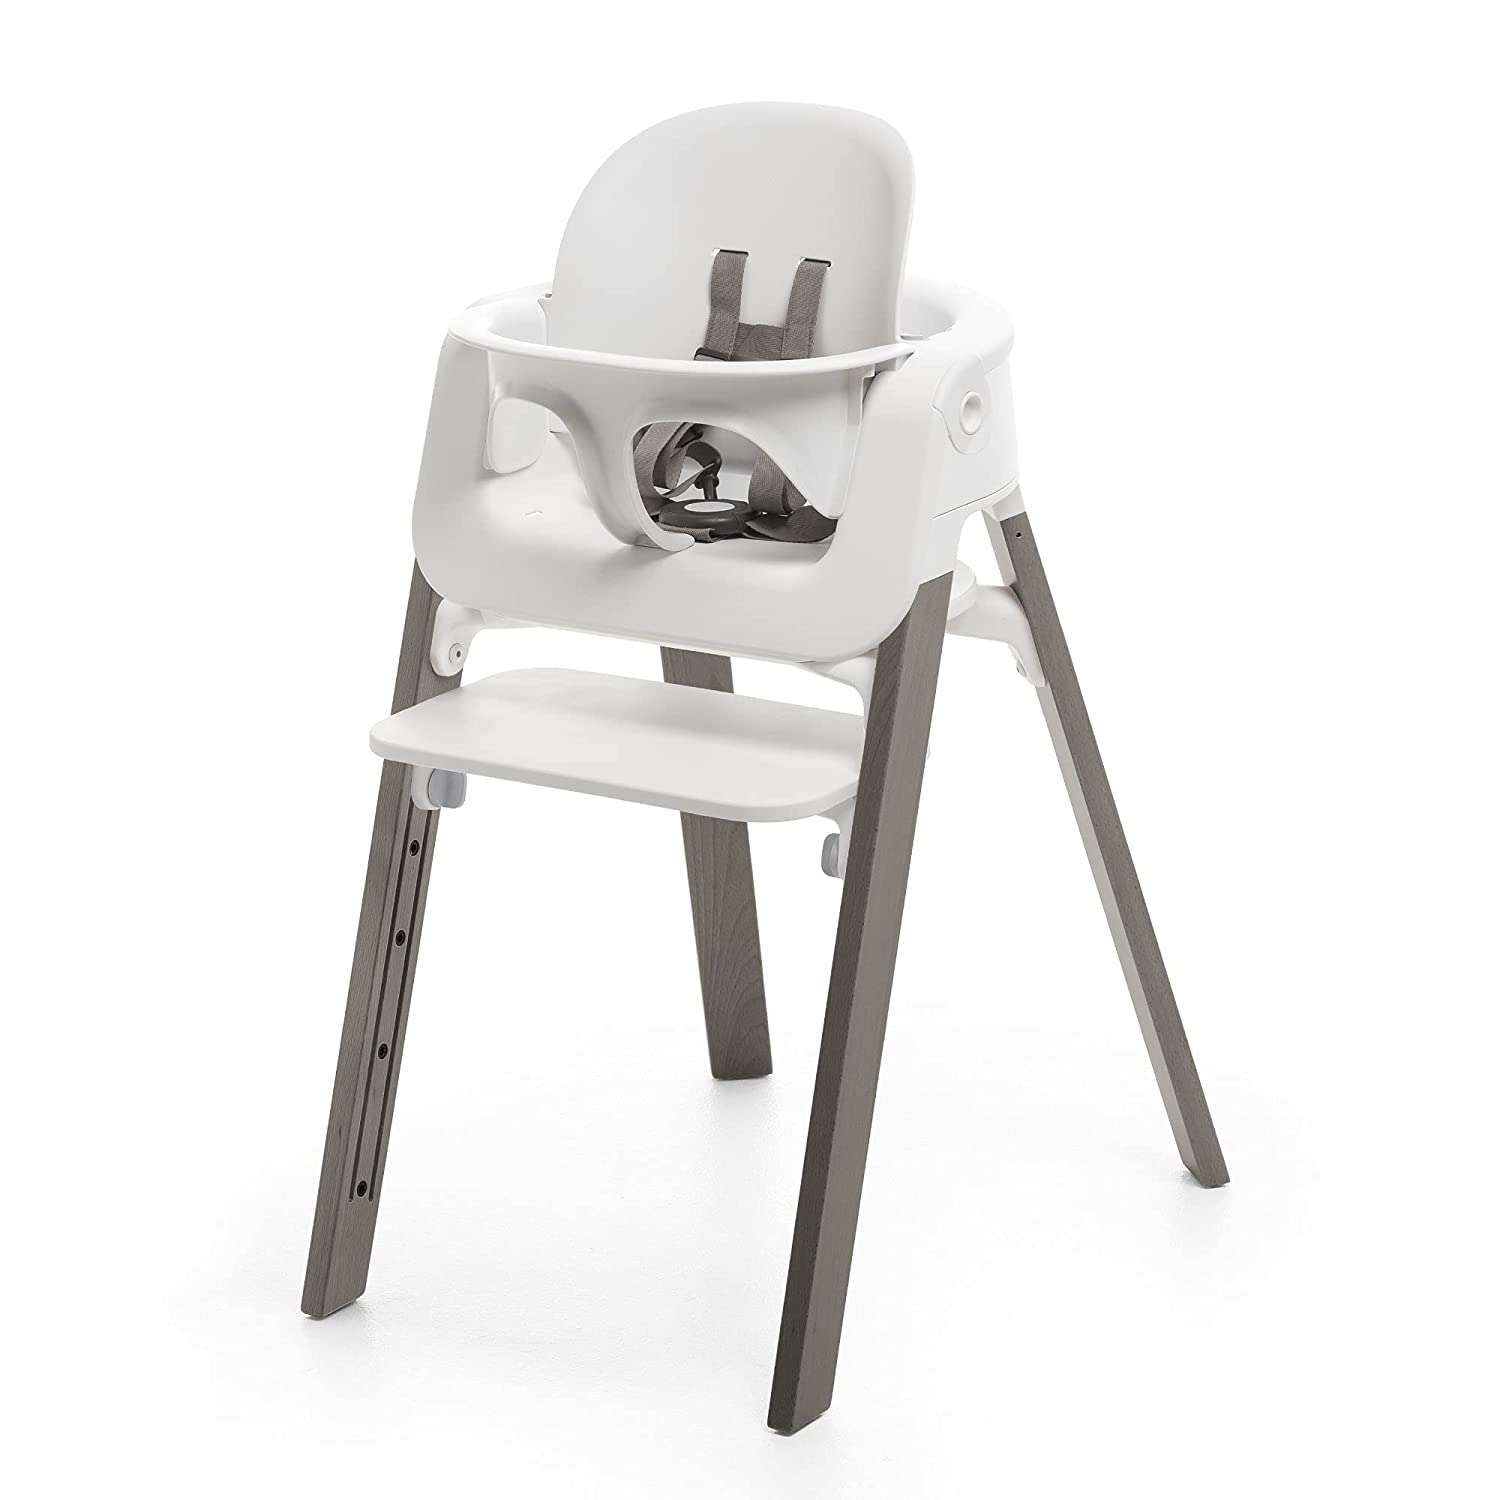 Детский стульчик-трансформер Stokke Steps, серый/белый цена и фото